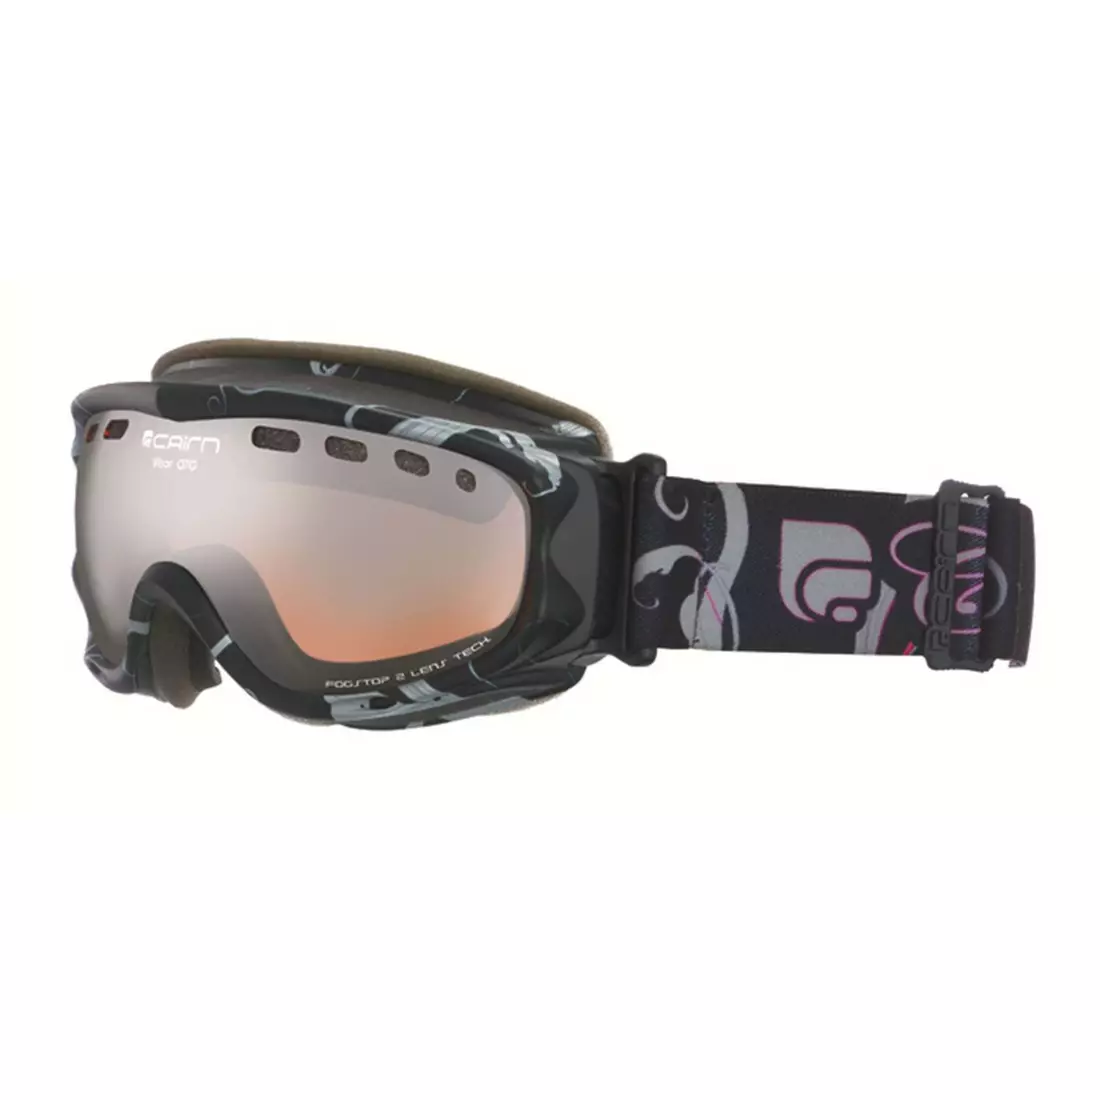 CAIRN lyžiarske / snowboardové okuliare VISOR OTG 8903, black-rose 5802818903